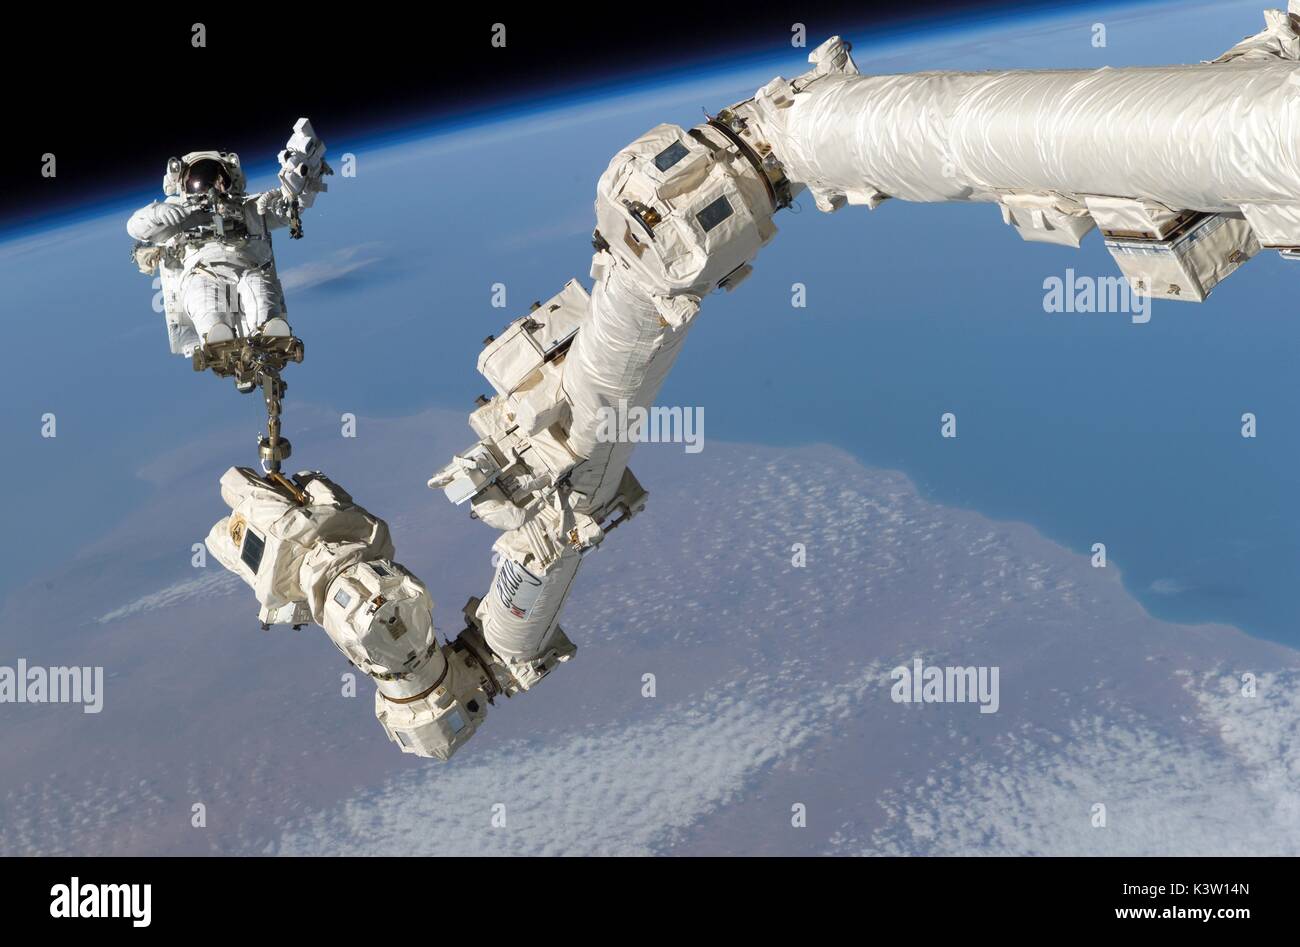 Nasa-Expedition 50 prime Besatzungsmitglied amerikanische Astronaut shane Kimbrough hilft die Internationale Raumstation Roboterarm Canadarm2 befestigen und das unter Druck stehende passender Adapter-3 verlagern (PMA-3), um zu der HARMONY-Modul während einer Eva spacewalk am 26. März 2017 in der Erdumlaufbahn. (Foto: Nasa Foto über planetpix) Stockfoto